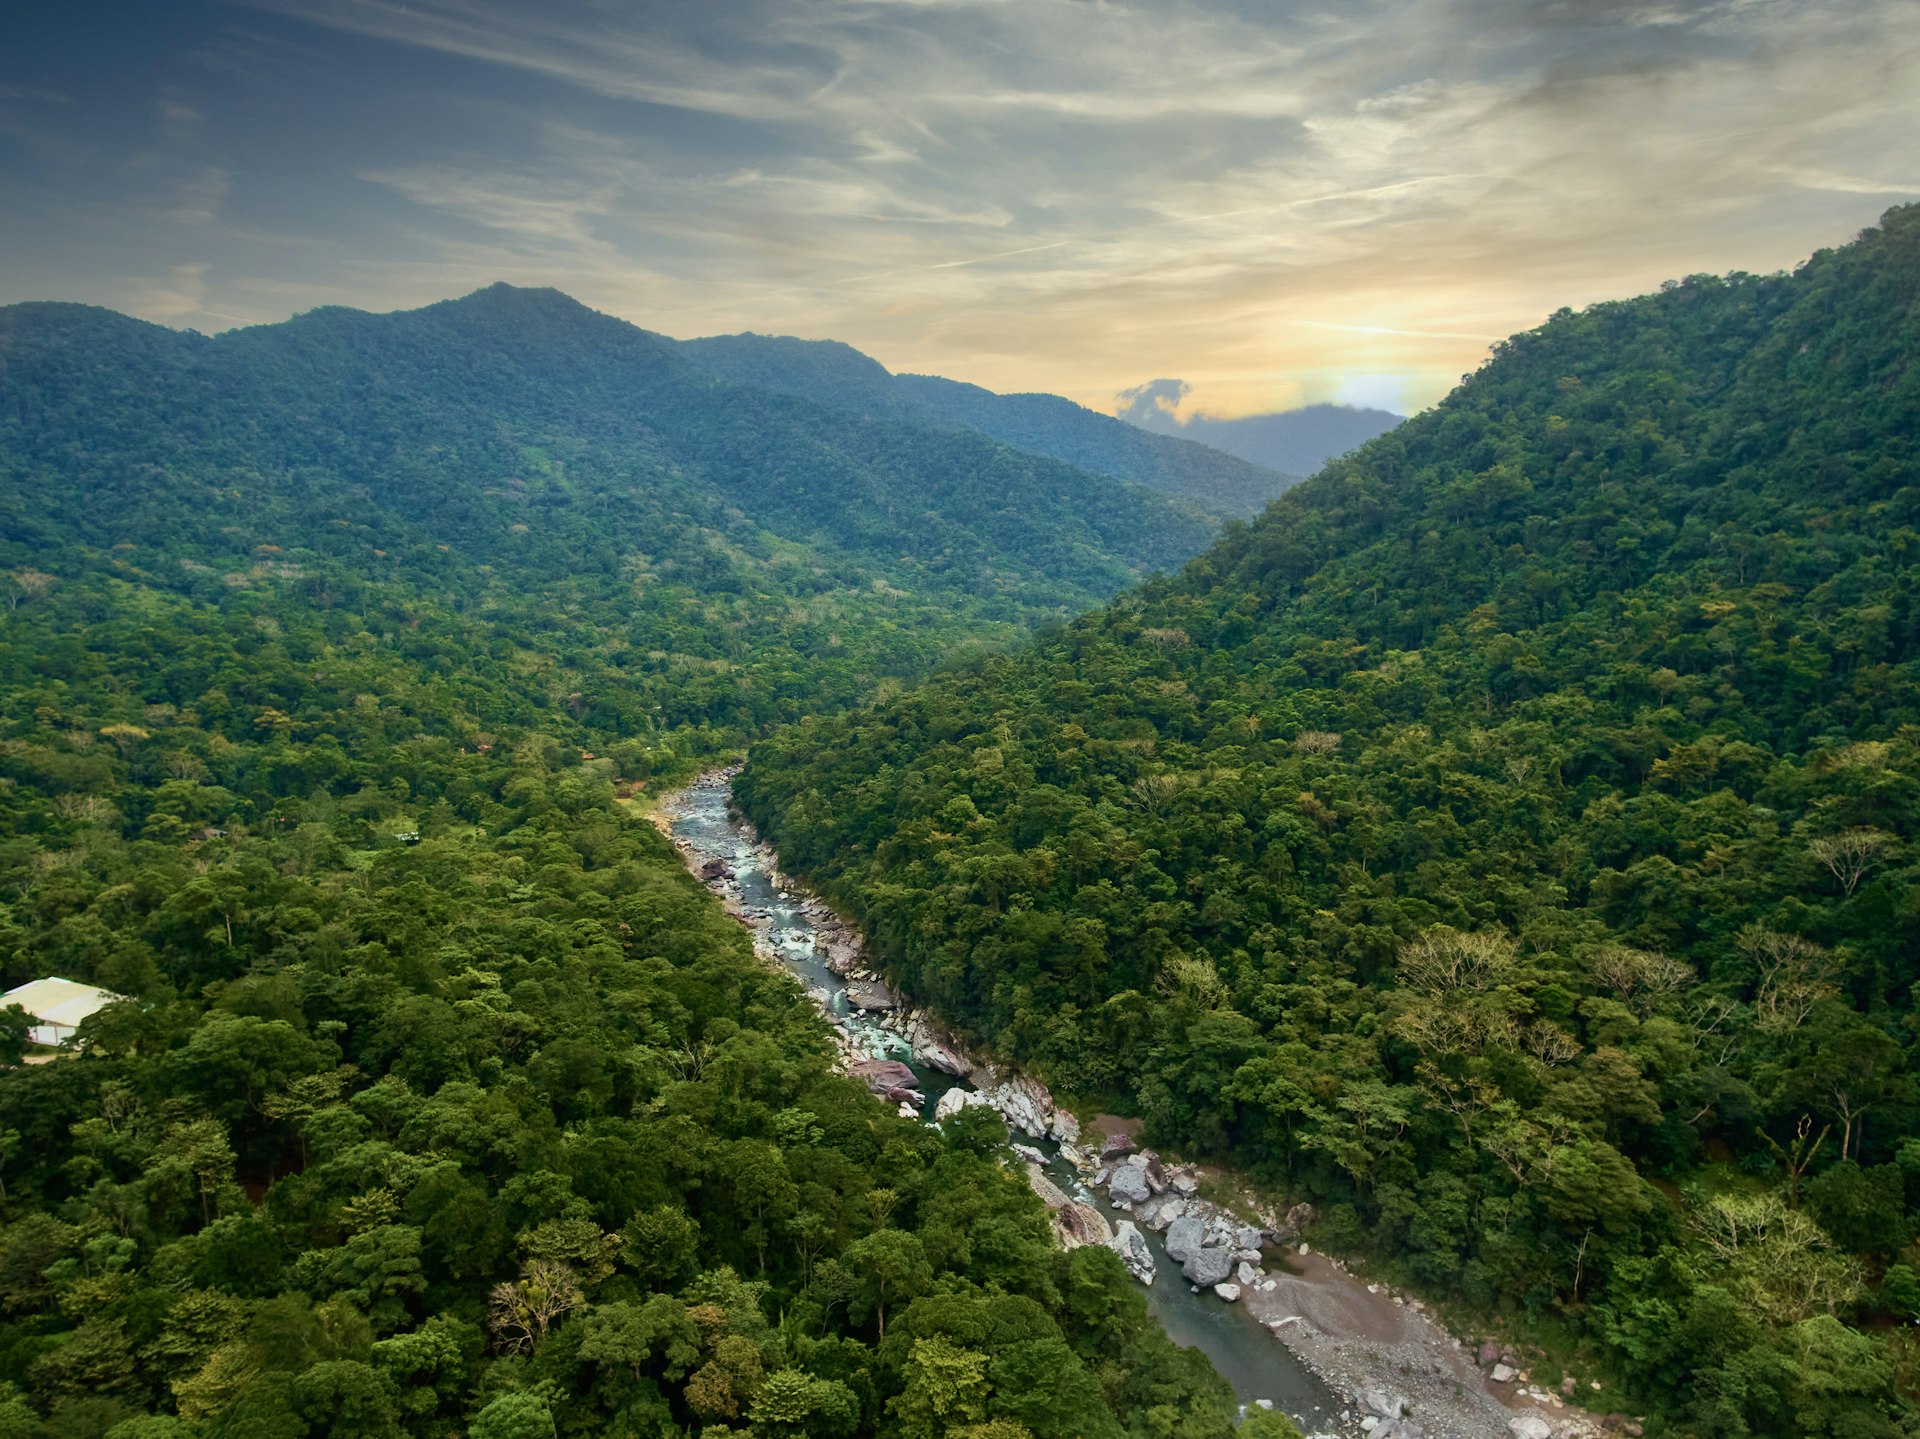 Cangrejal River in Pico Bonito National Park in Honduras